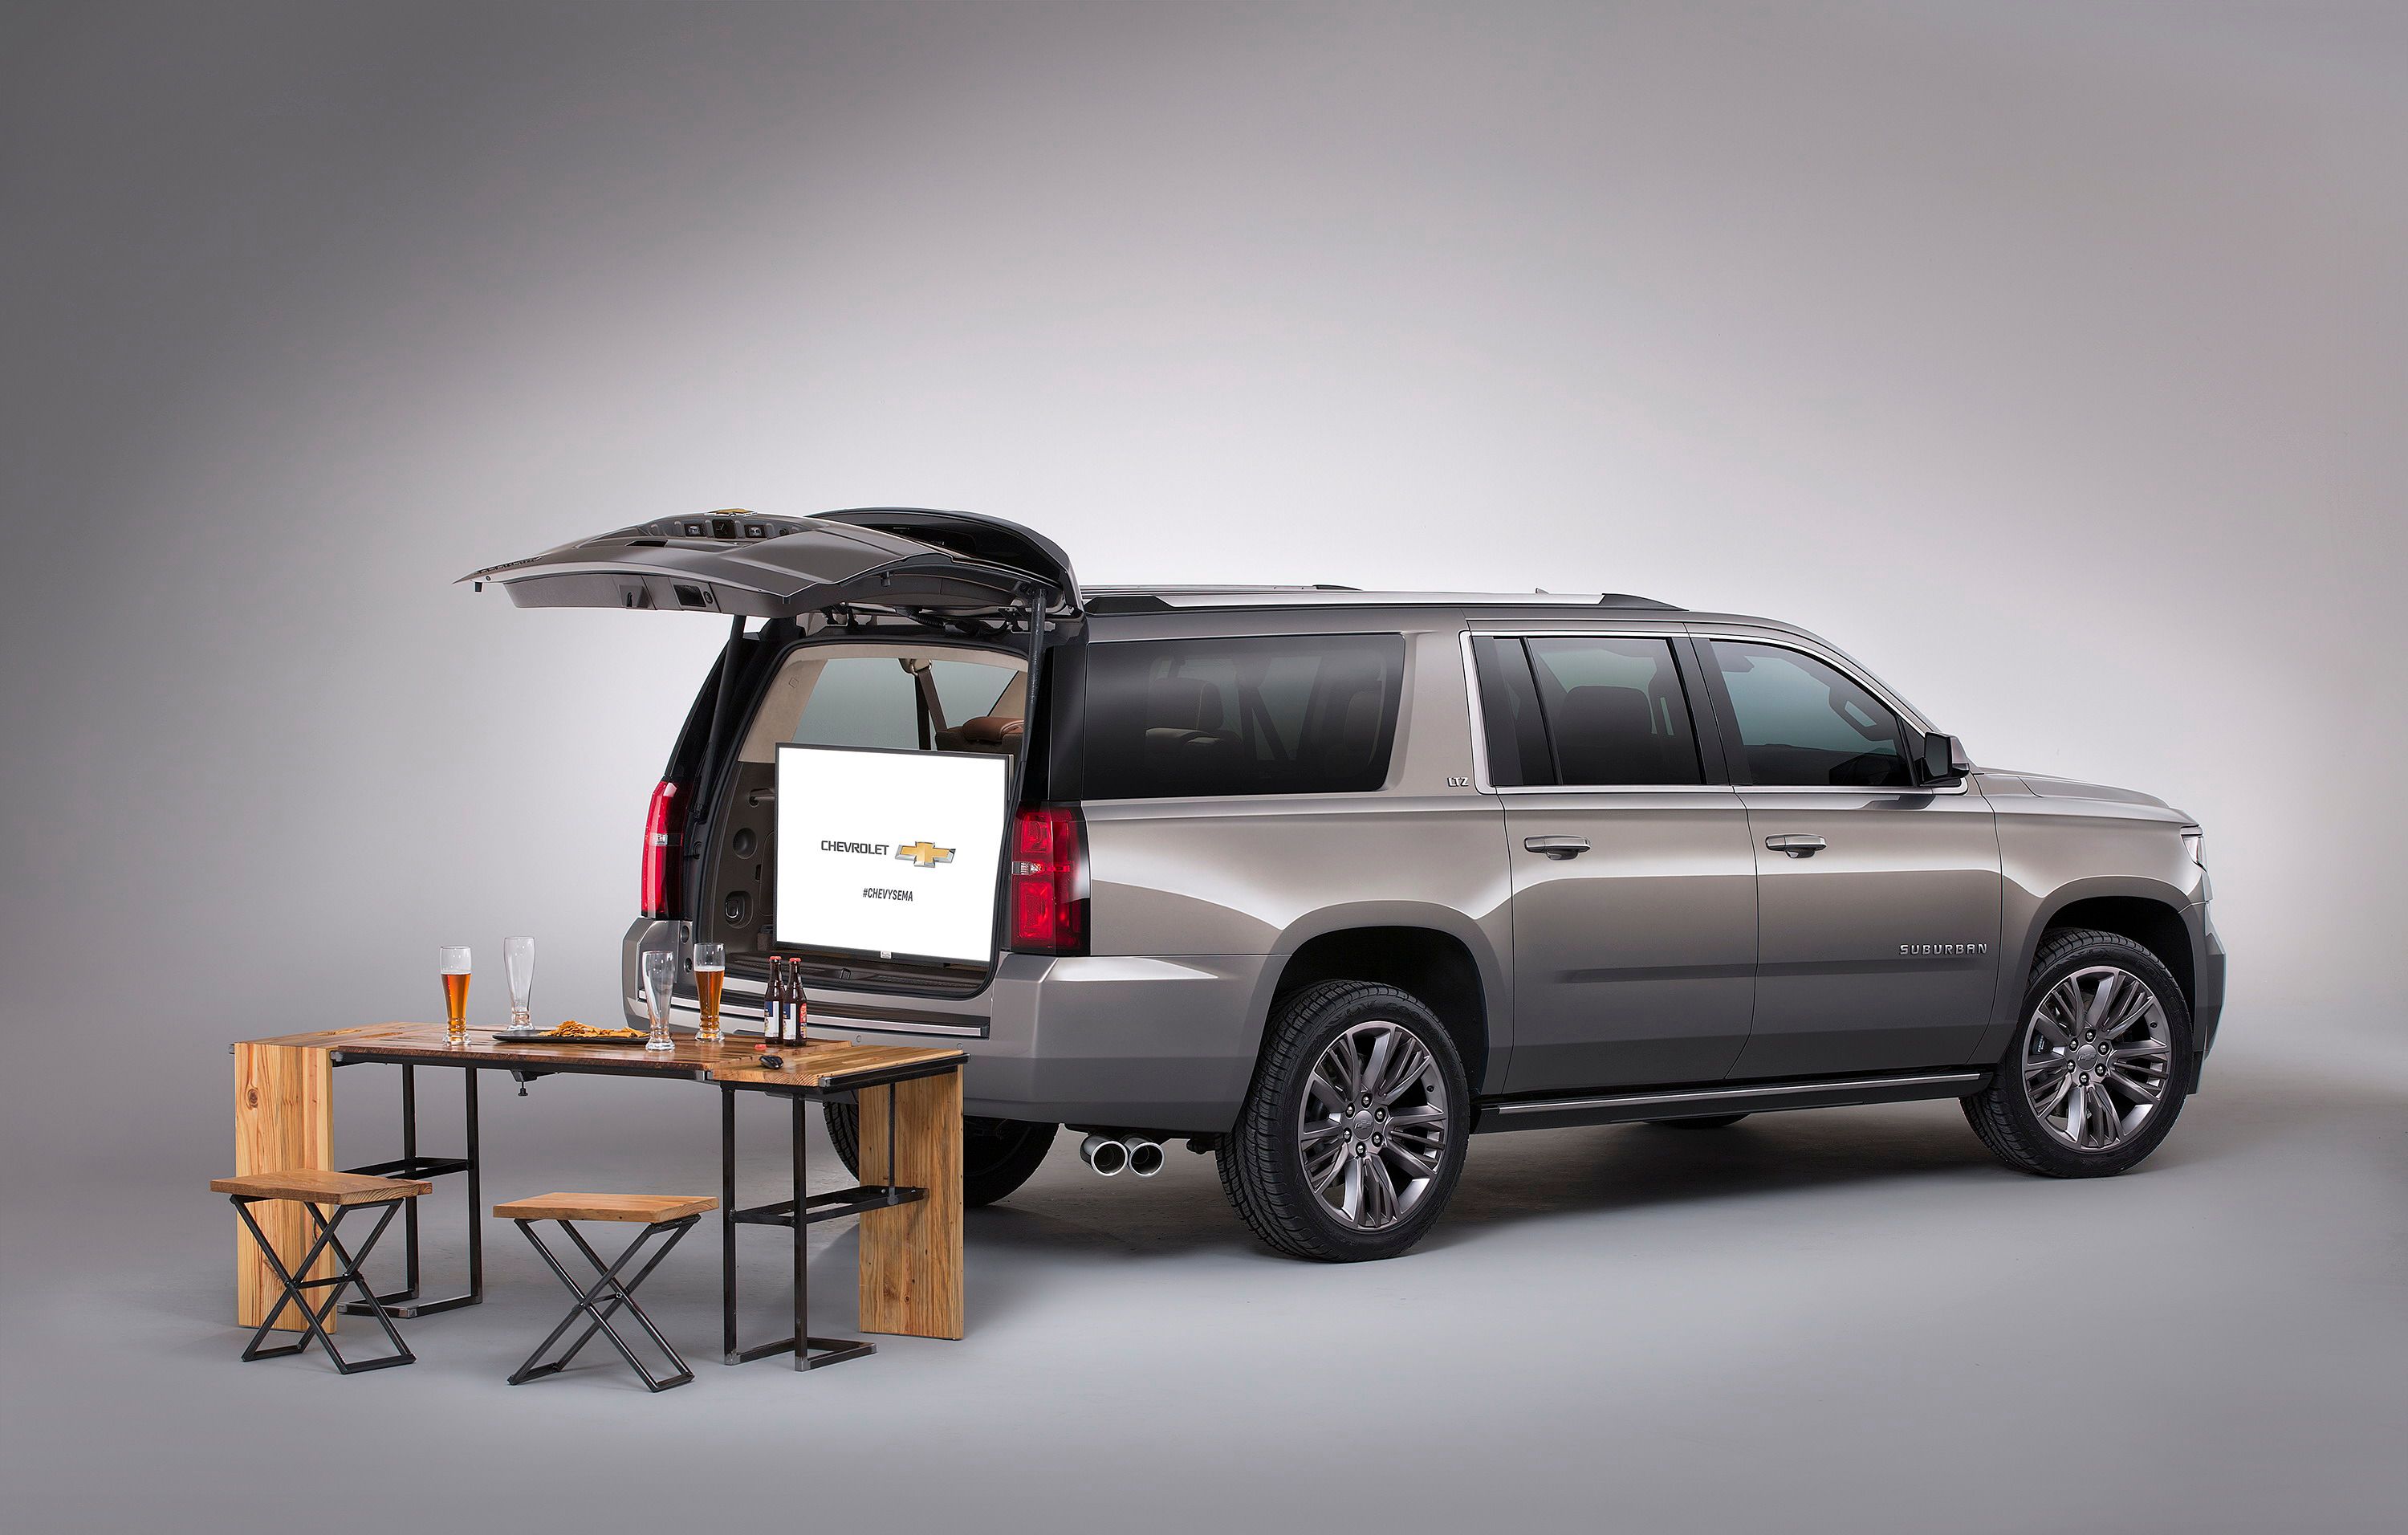 2015 Chevrolet Suburban Premium Outdoors Concept